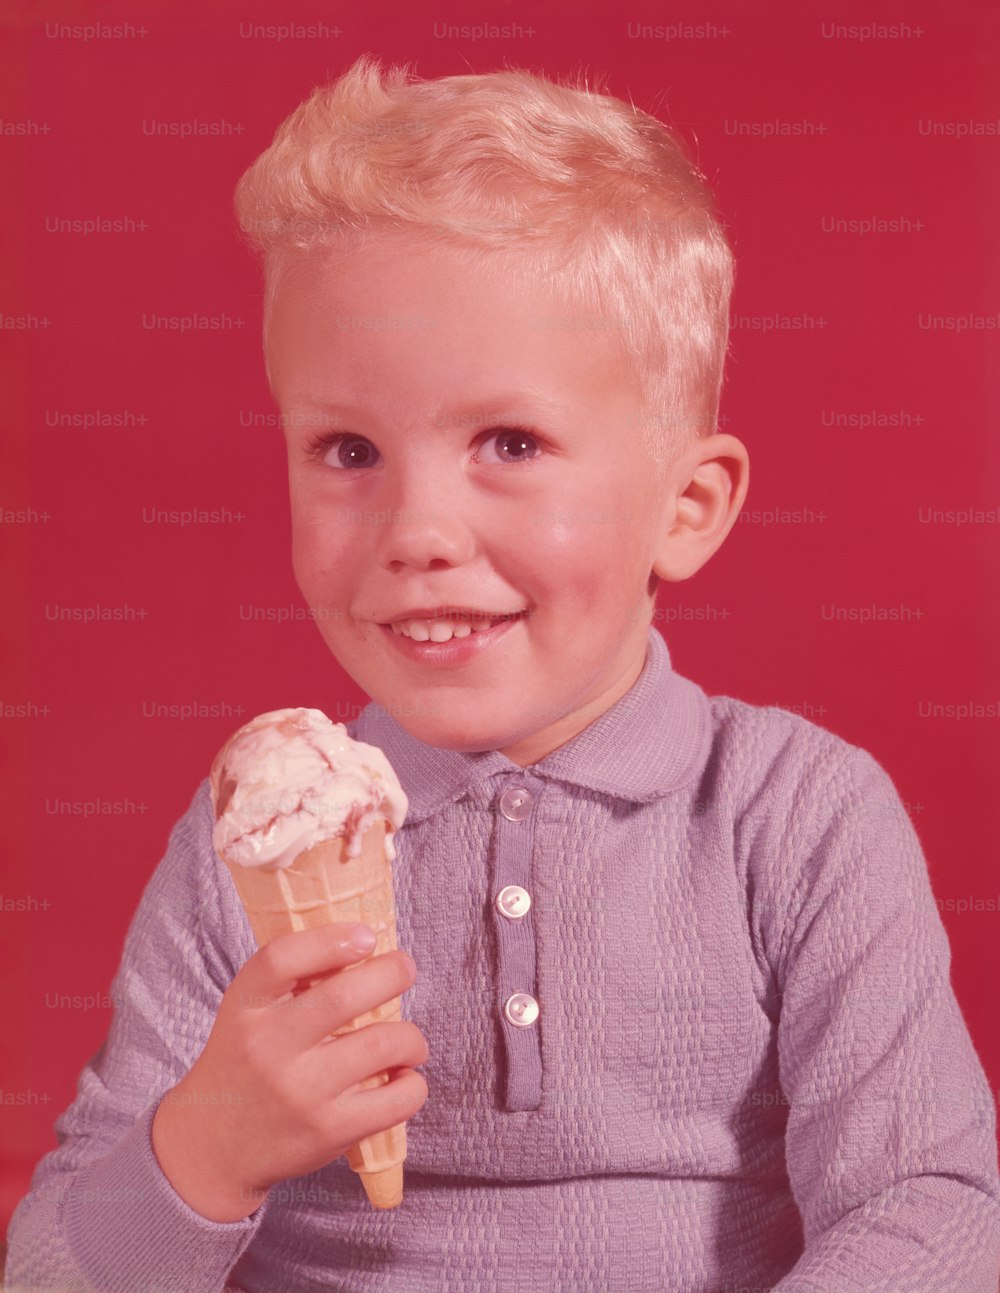 アメリカ合衆国 - 1950年代頃:アイスクリームコーンを持つ少年。